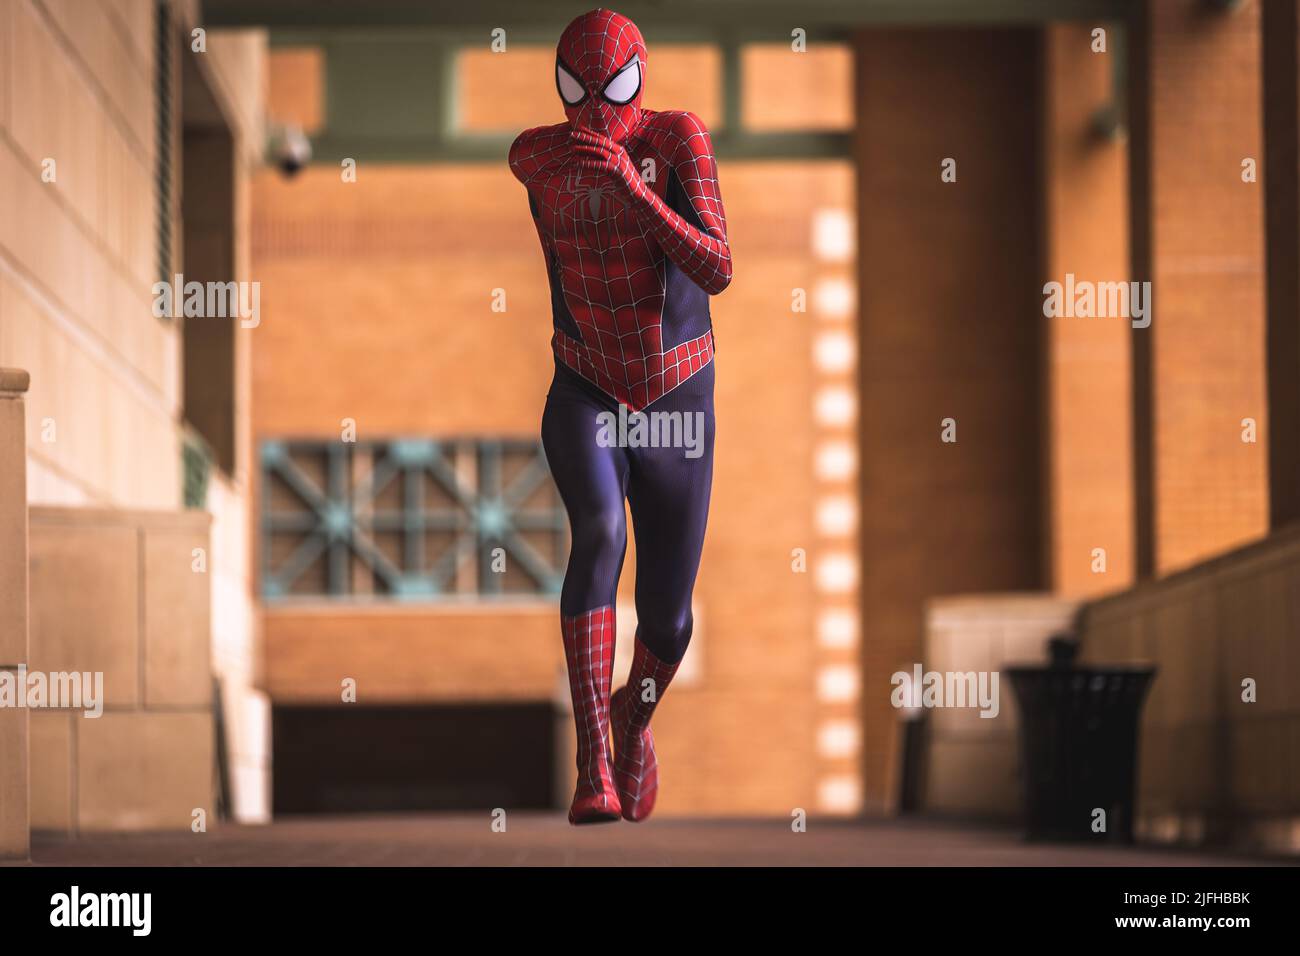 Spider-man, der dem Schurken entkommt. Berühmter Superheld, der die Innenstadt von Fort Worth in Texas, USA, besucht Stockfoto